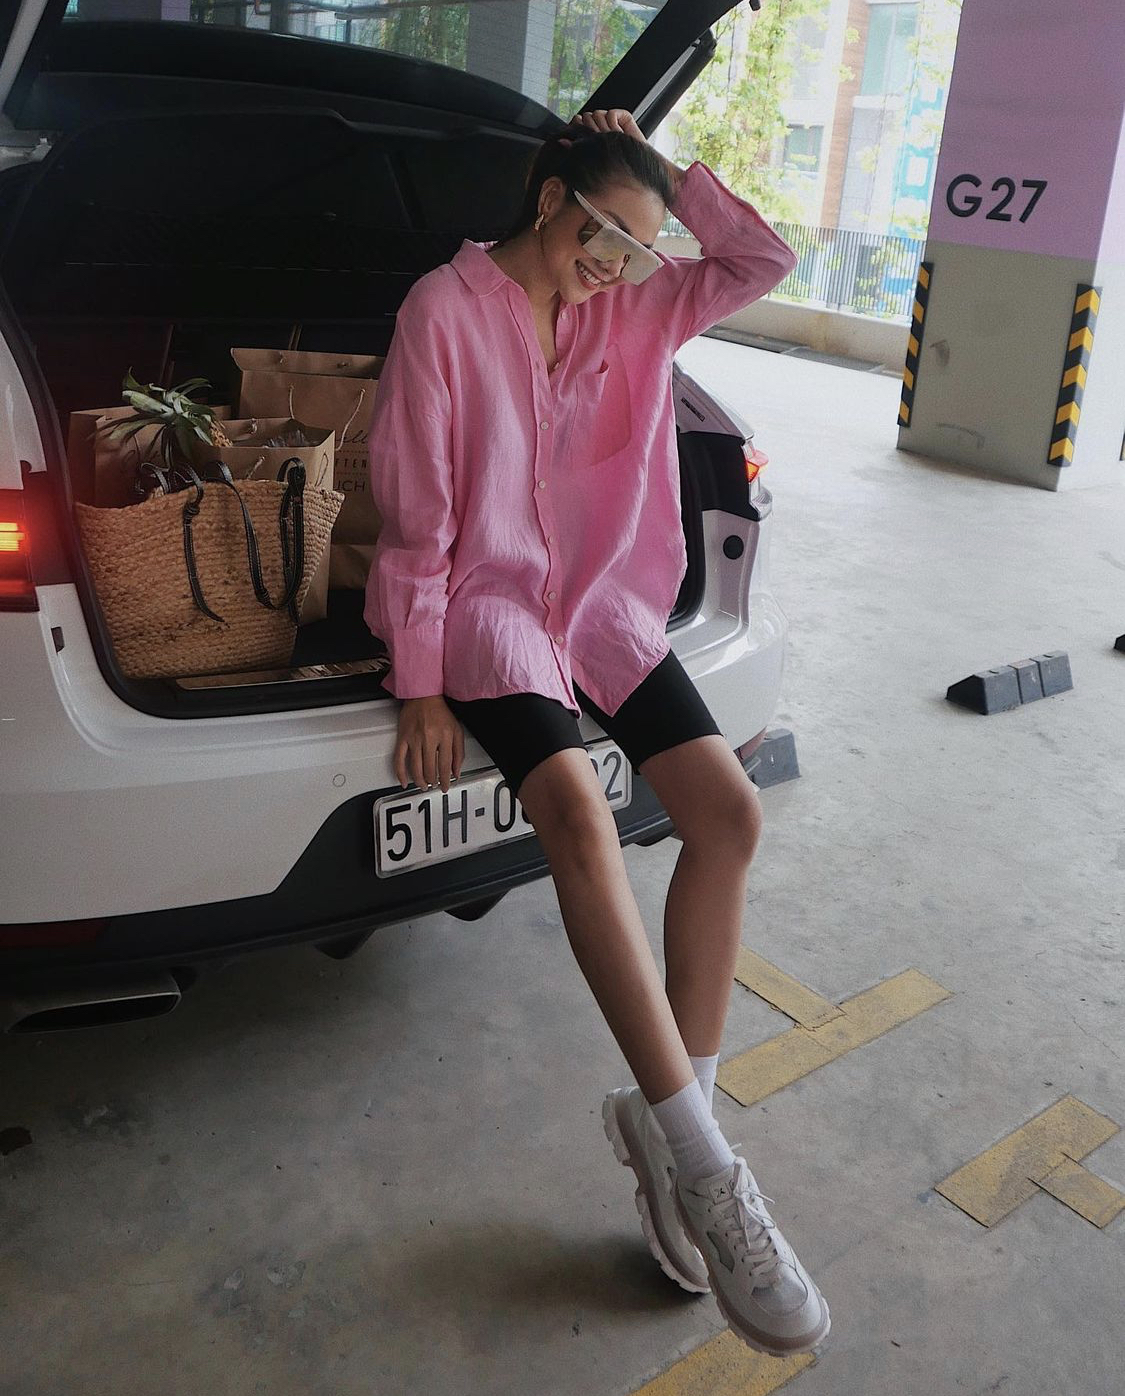 Mặc dù set đồ của Thanh Hằng toàn những item cơ bản như áo sơ mi hồng, quần biker đen, giày sneakers trắng nhưng nhìn tổng thể lại vô cùng sành điệu và ấn tượng.